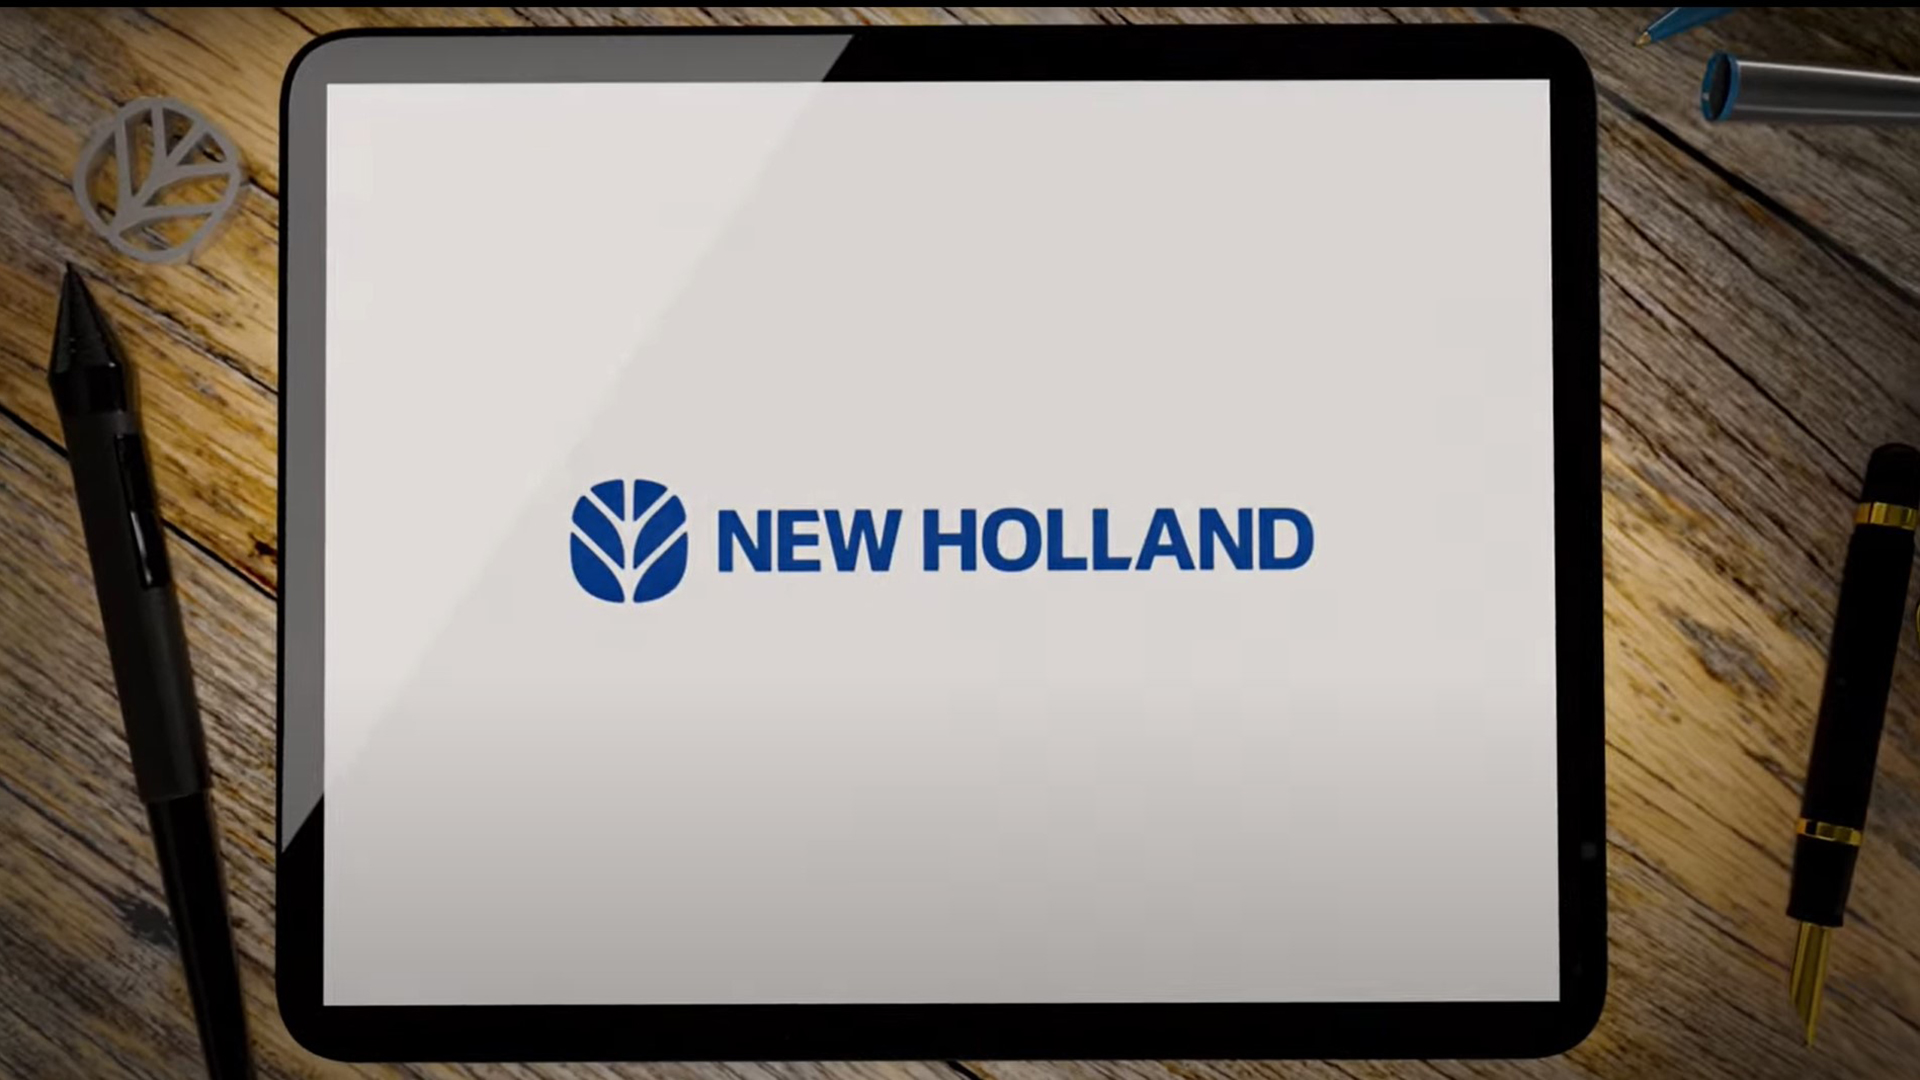 New Holland w przyszłości: nasza tożsamość zmienia się